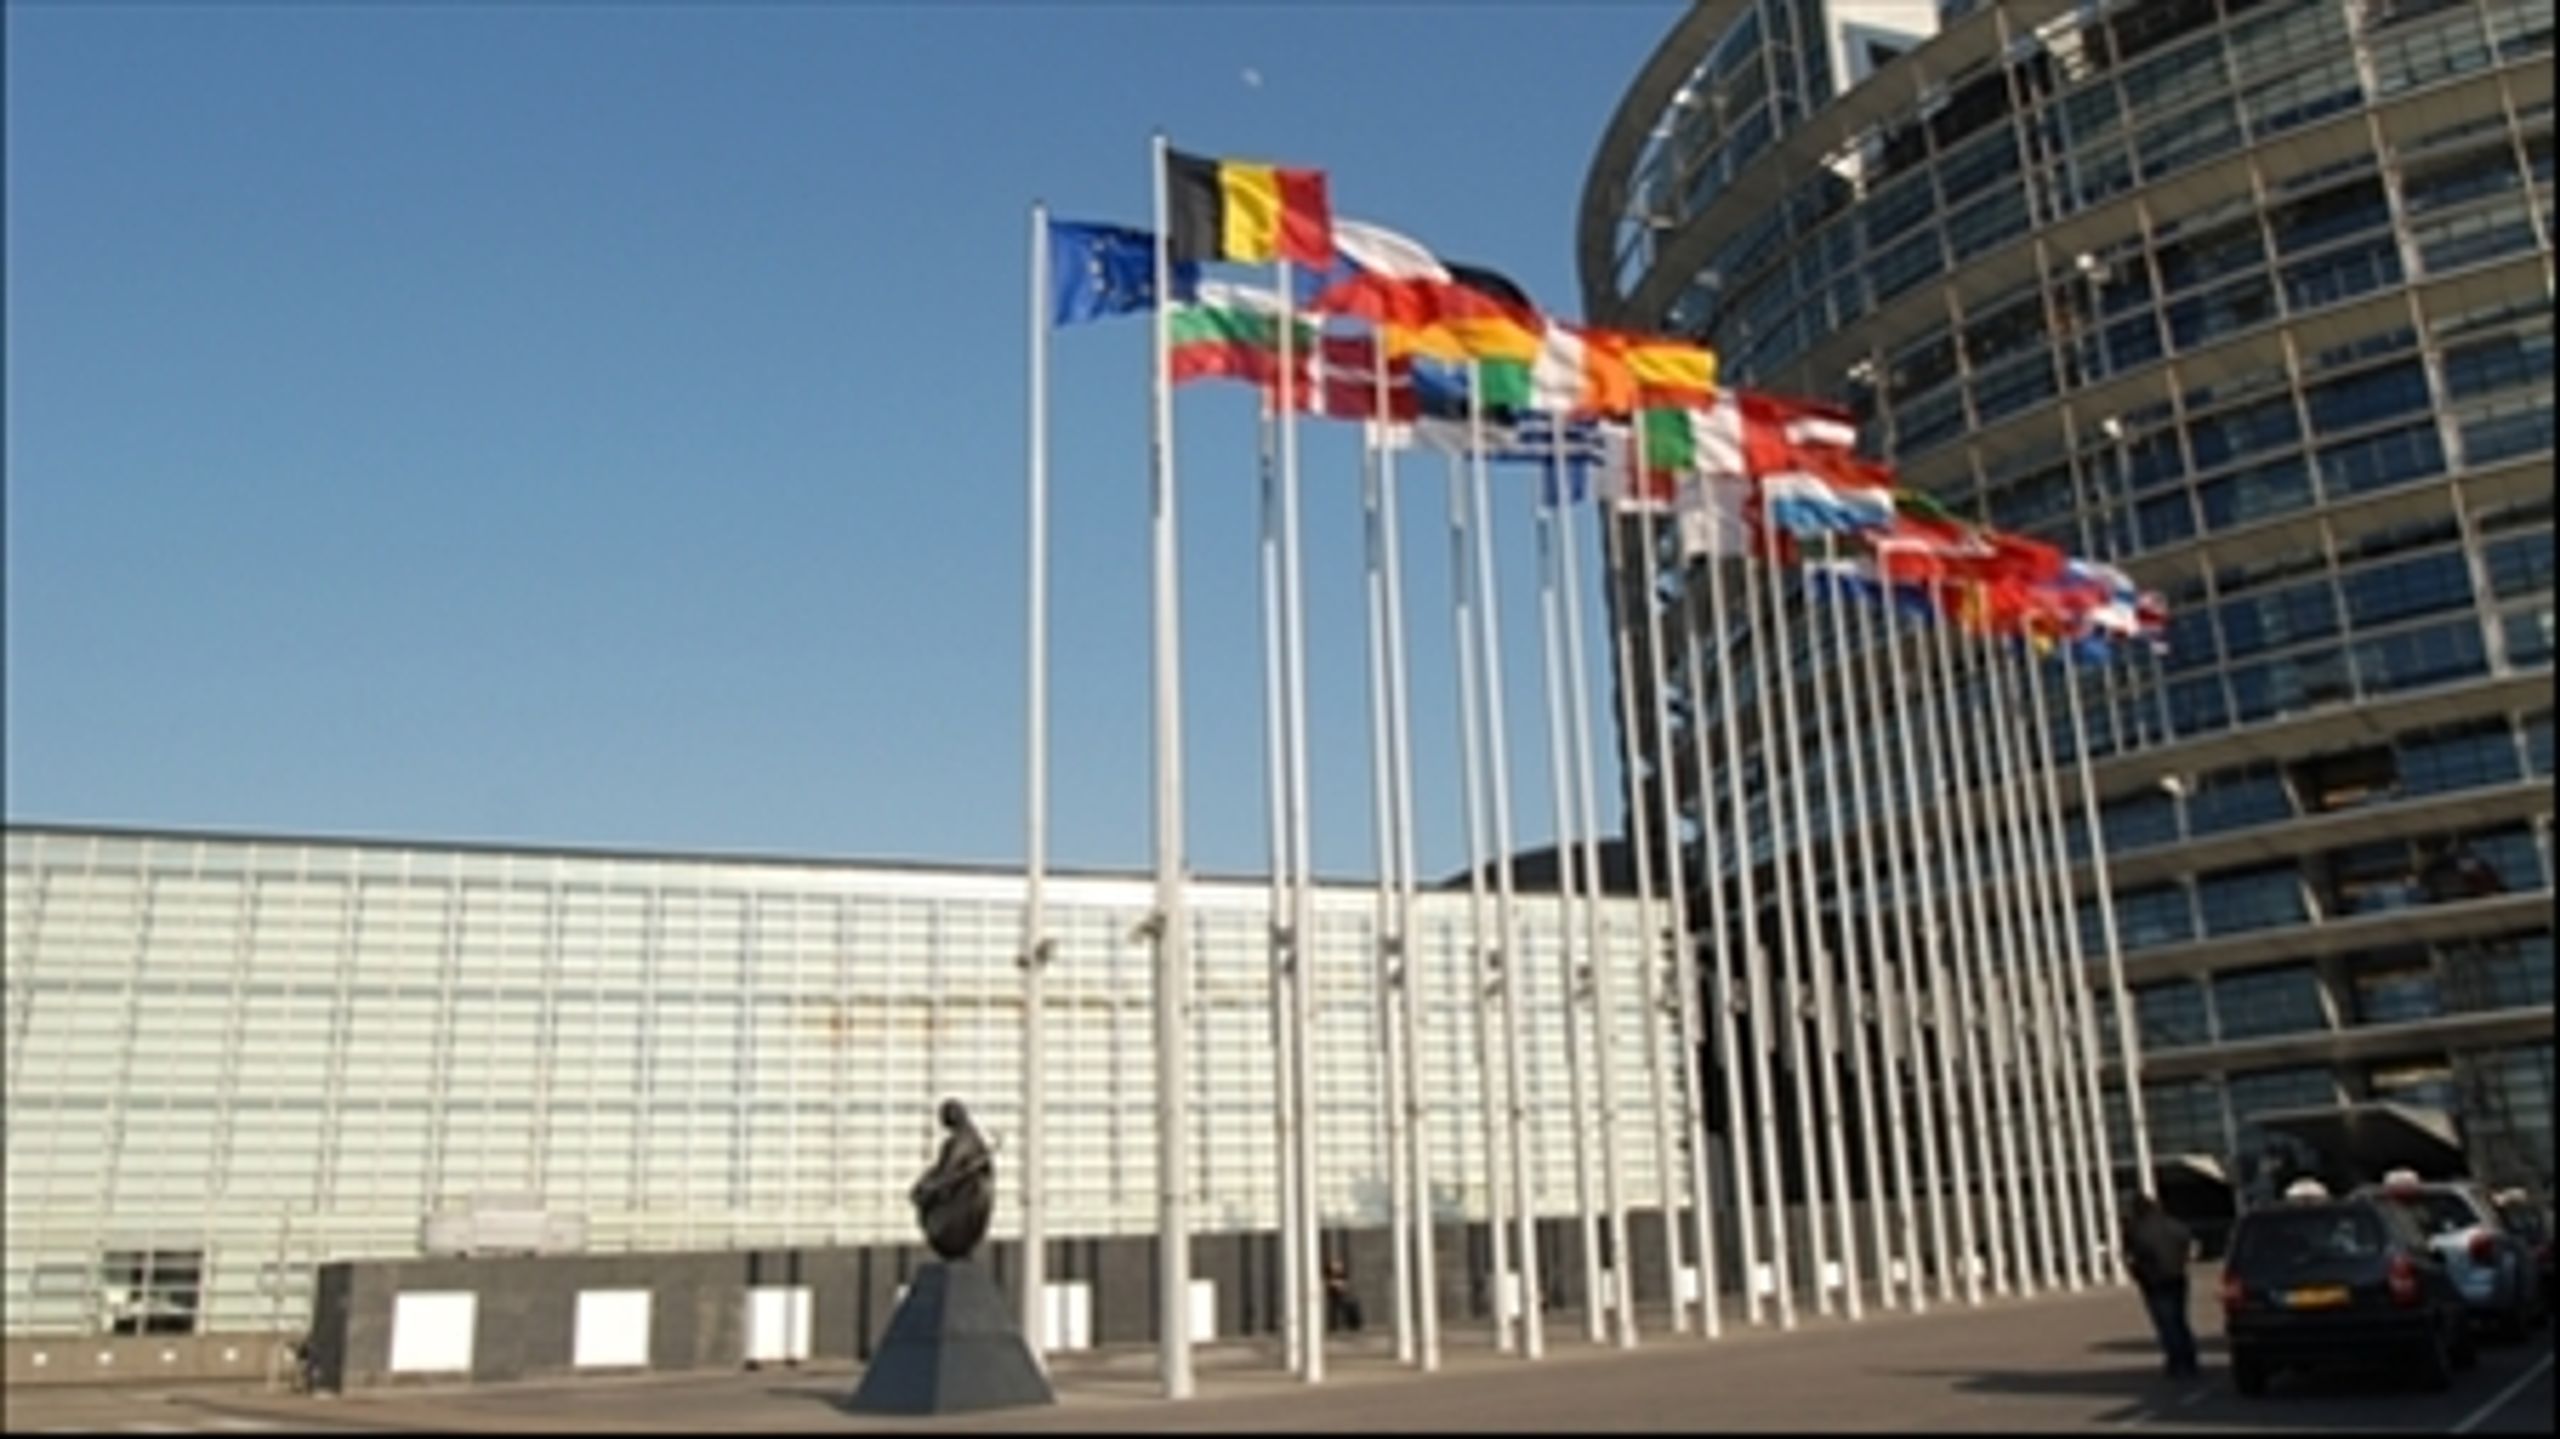 Europa-Parlamentet stemte onsdag for et nyt fælles åbenhedsregister over lobbyister og andre interessegrupper